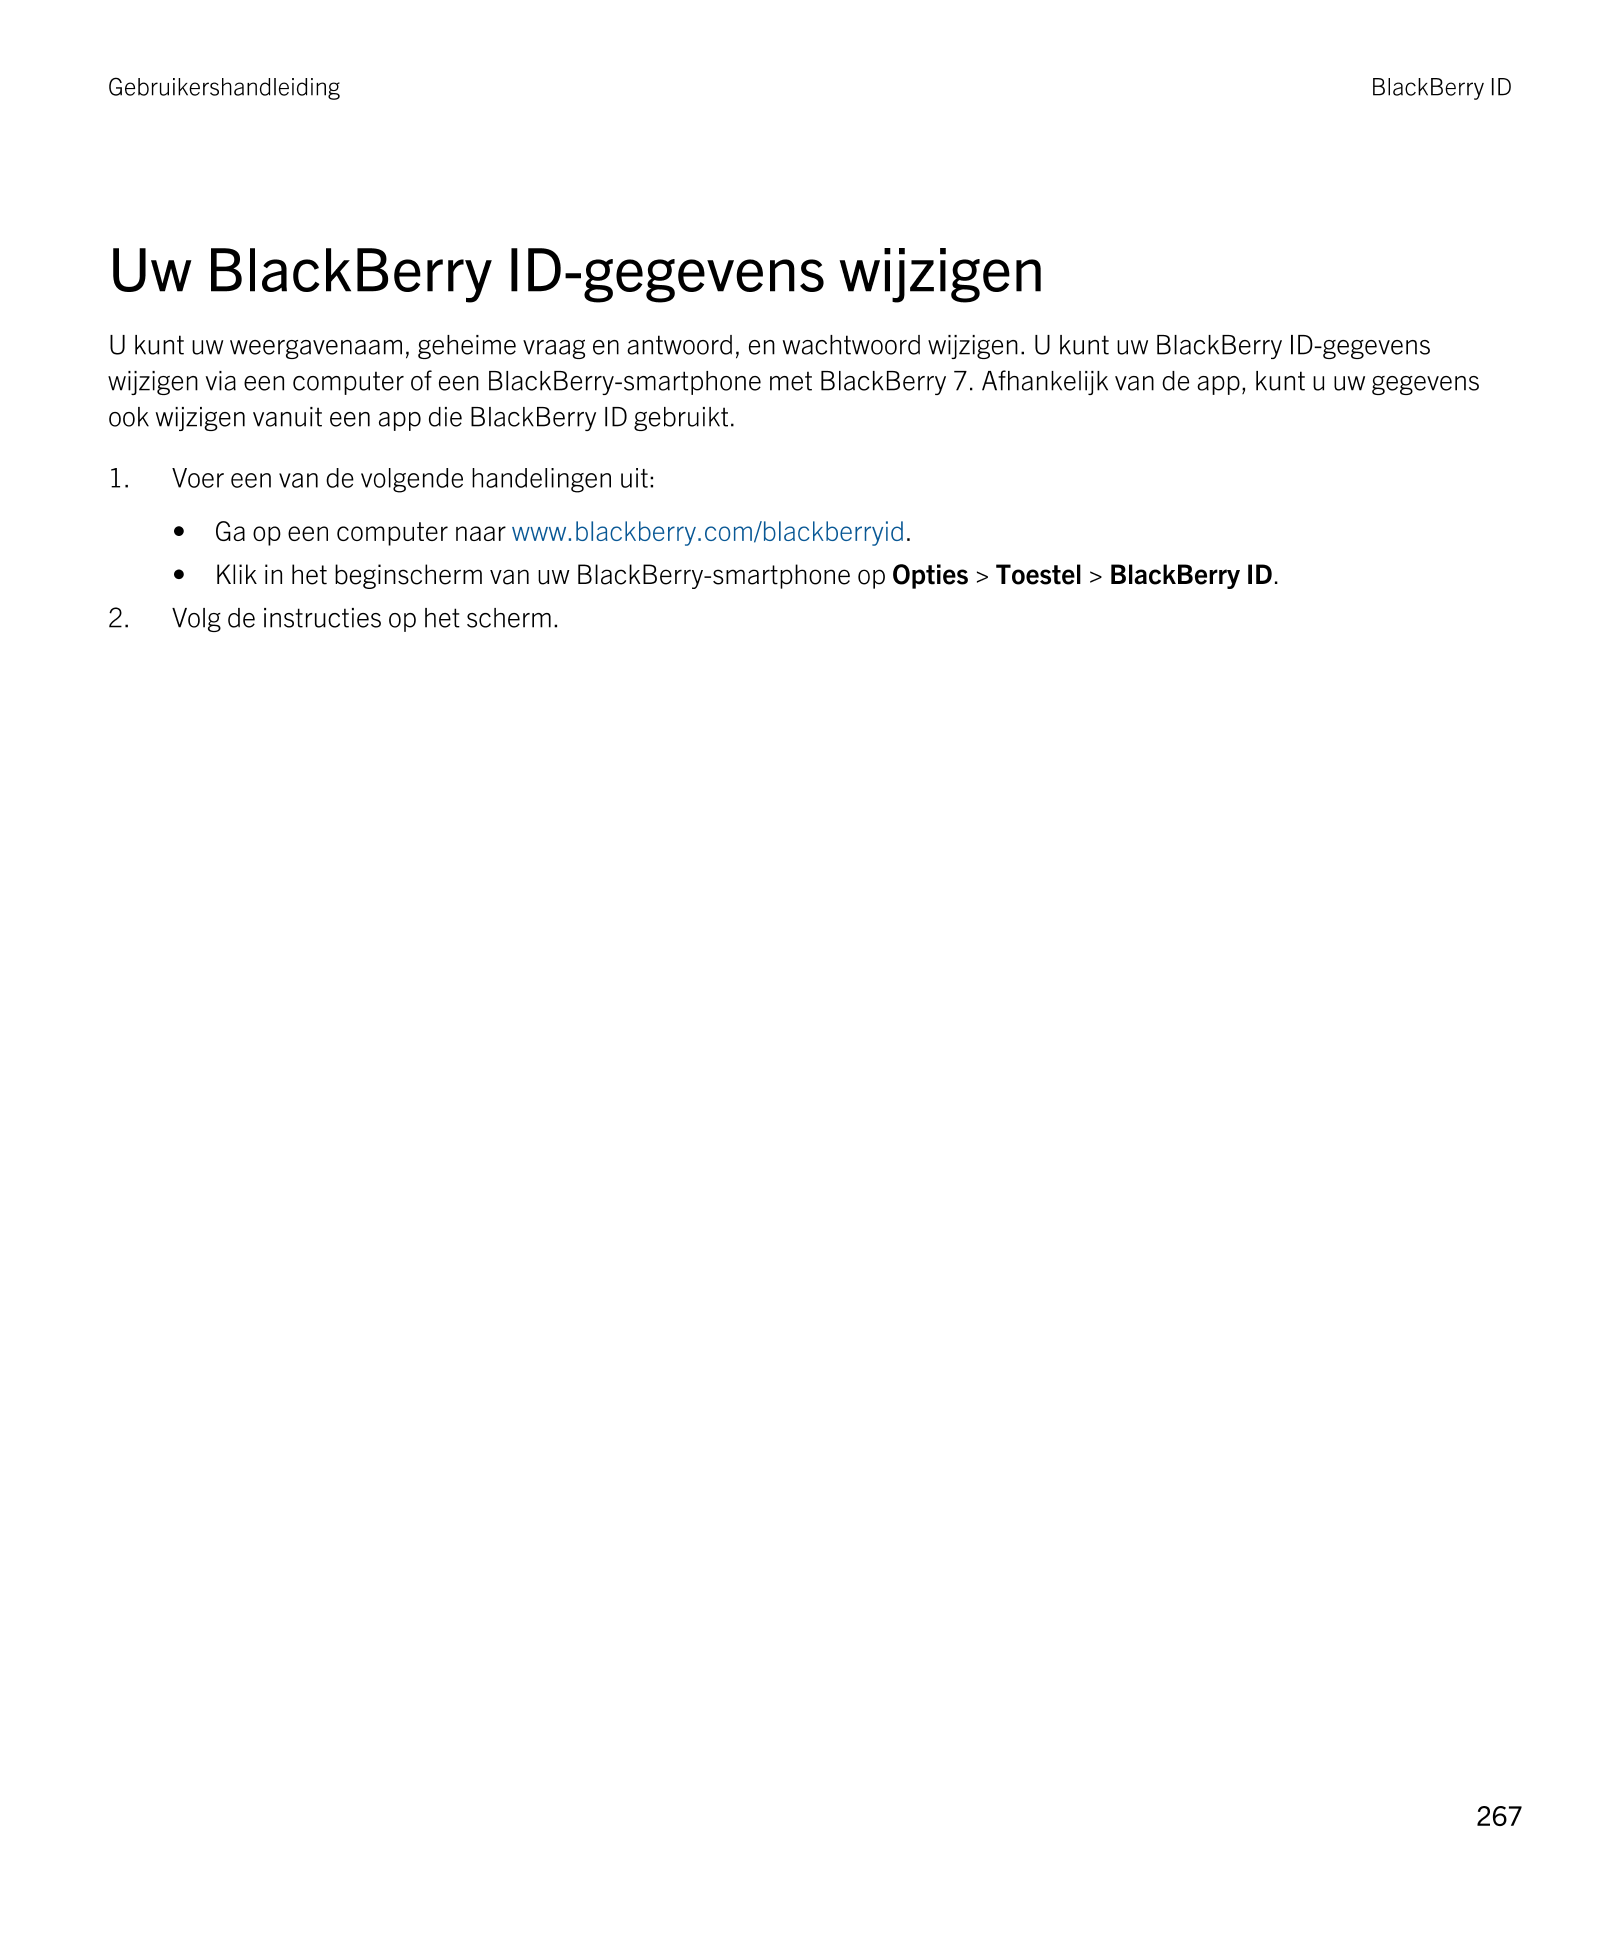 Gebruikershandleiding BlackBerry ID 
Uw  BlackBerry ID-gegevens wijzigen
U kunt uw weergavenaam, geheime vraag en antwoord, en w